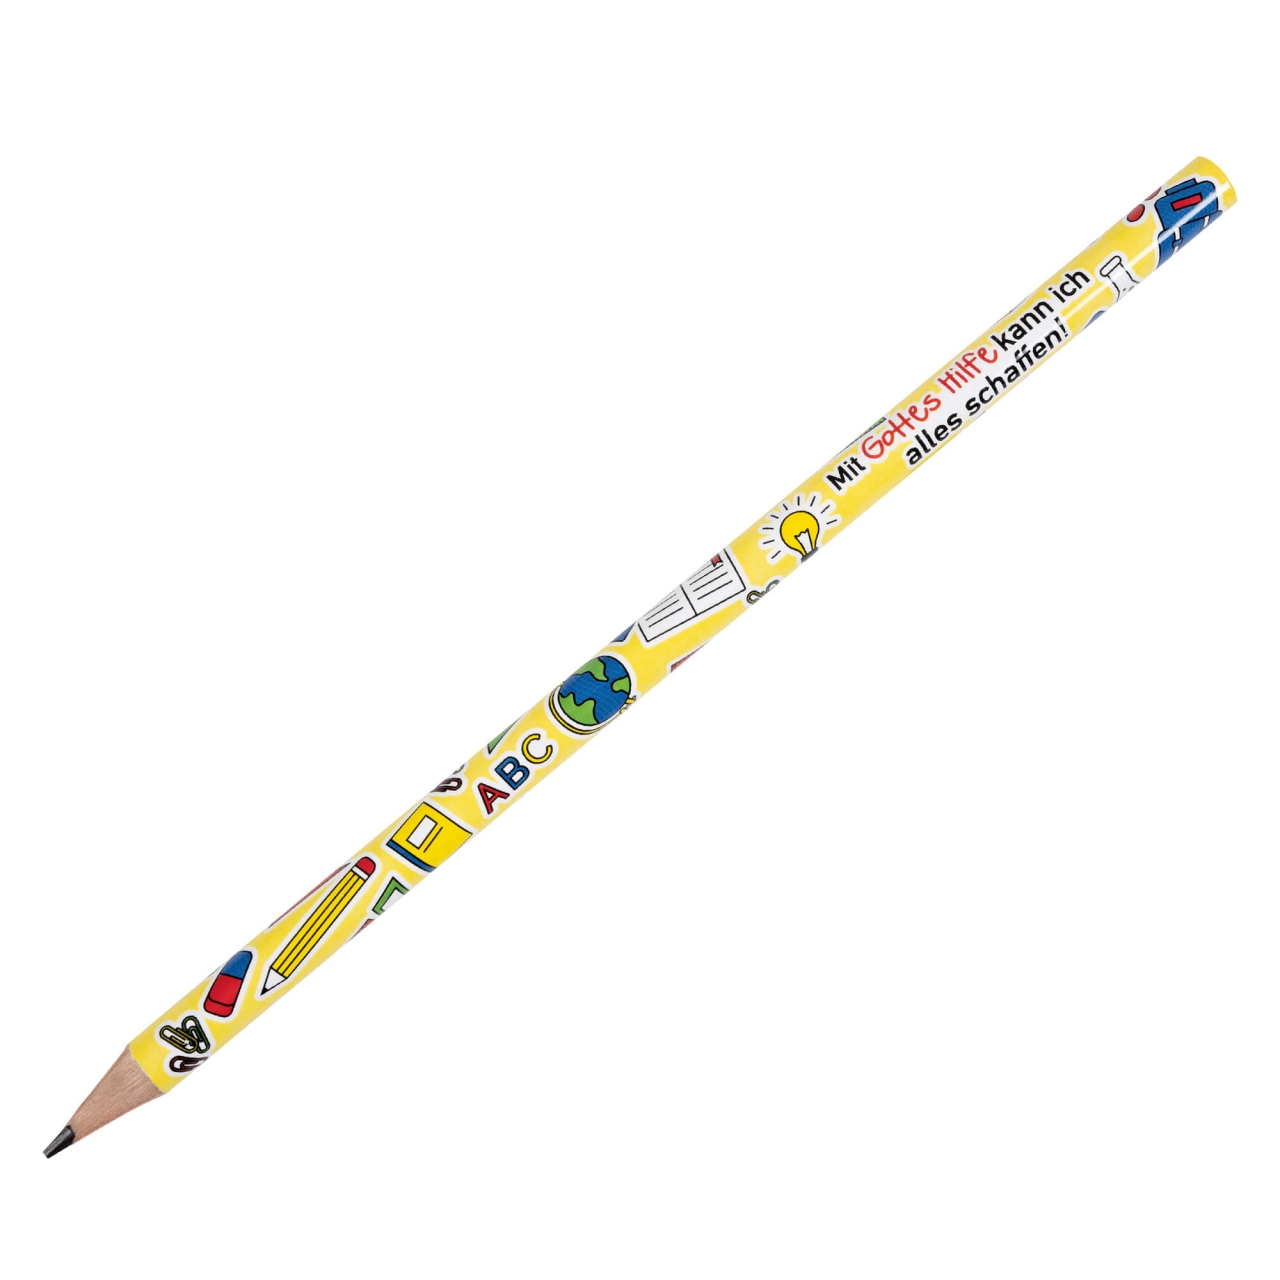 Bleistift - Mit Gottes Hilfe kann ich alles schaffen!